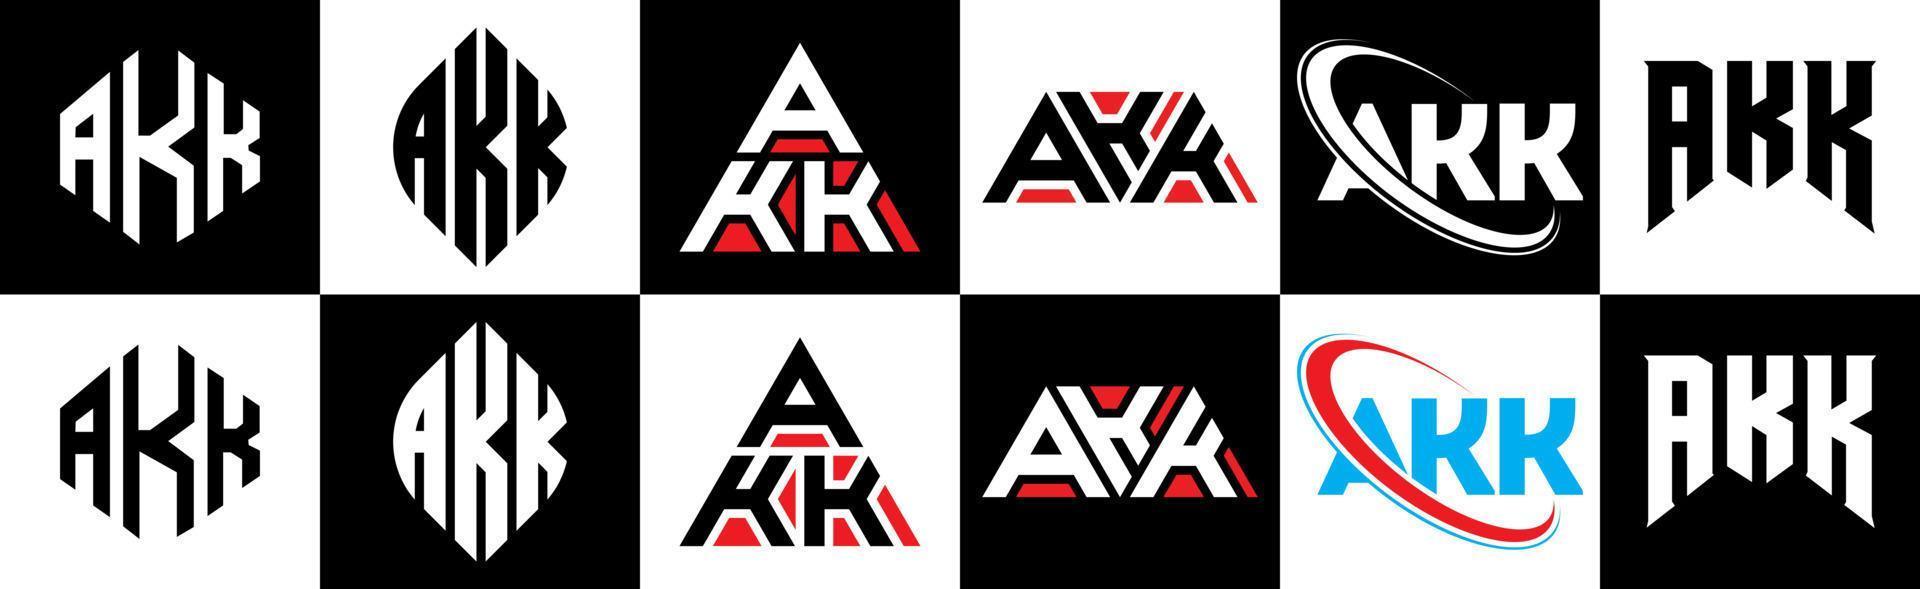 création de logo de lettre akk en six styles. akk polygone, cercle, triangle, hexagone, style plat et simple avec logo de lettre de variation de couleur noir et blanc dans un plan de travail. akk logo minimaliste et classique vecteur